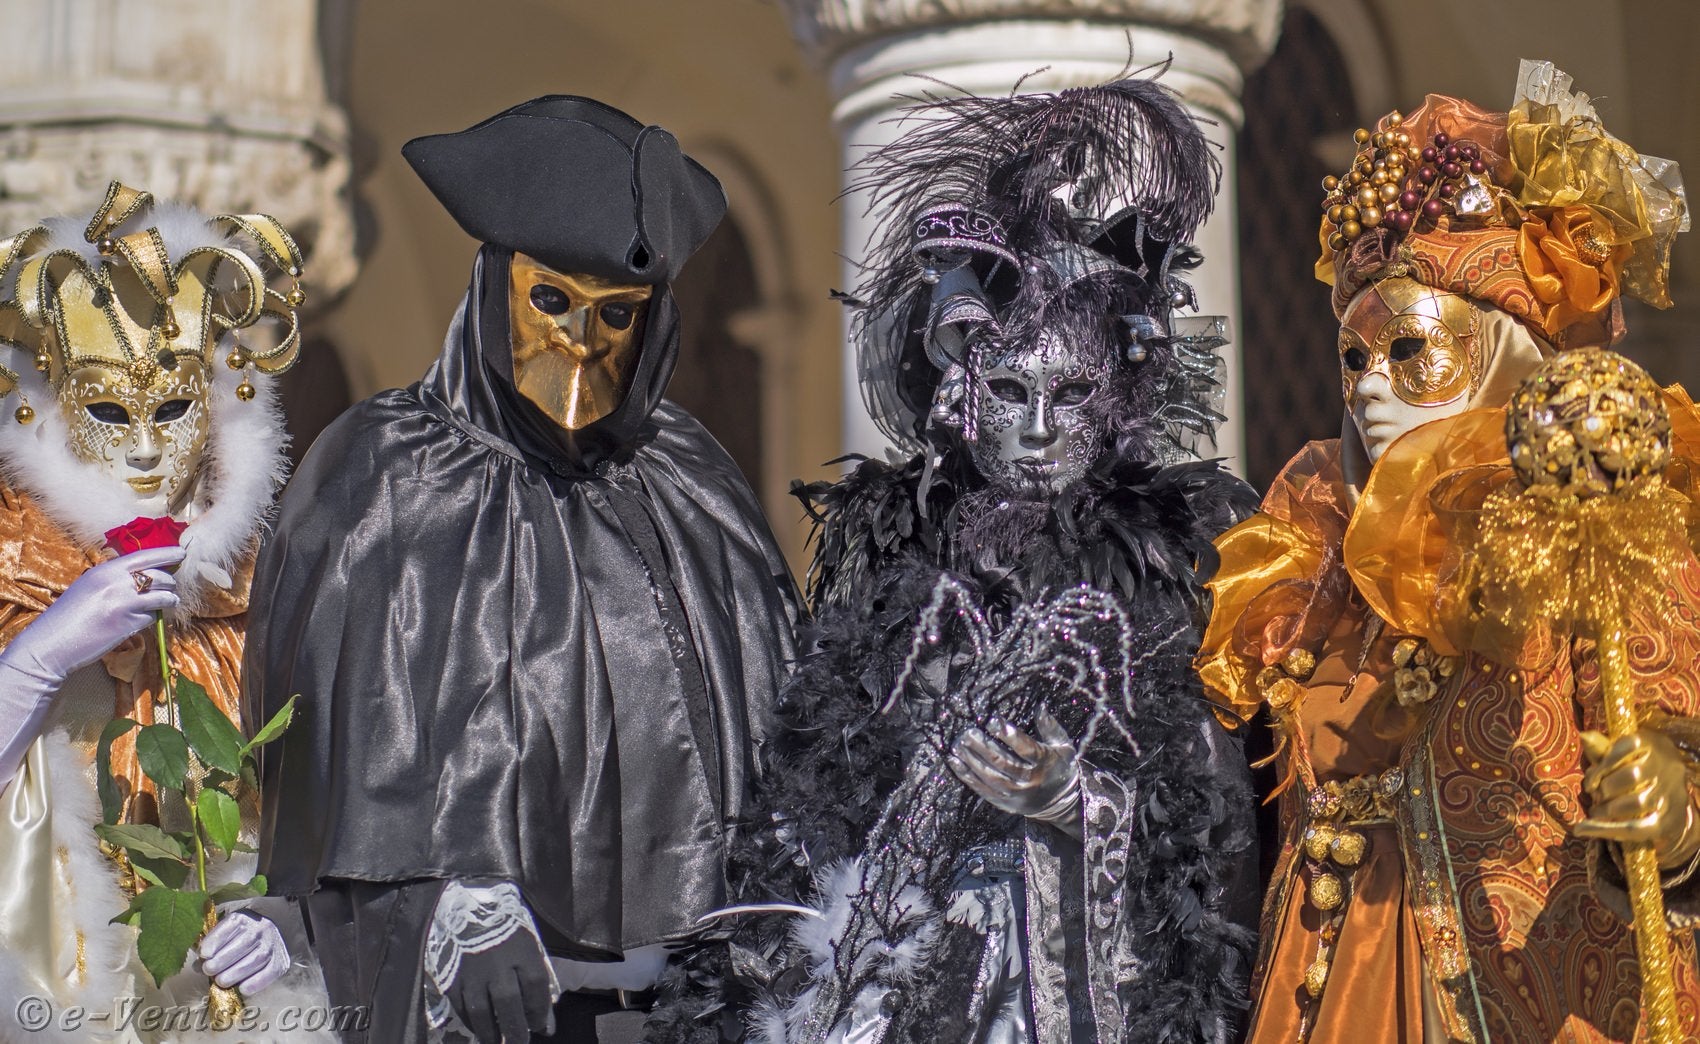 Carnaval de Venise : Bal Masqué dans un palais vénitien avec